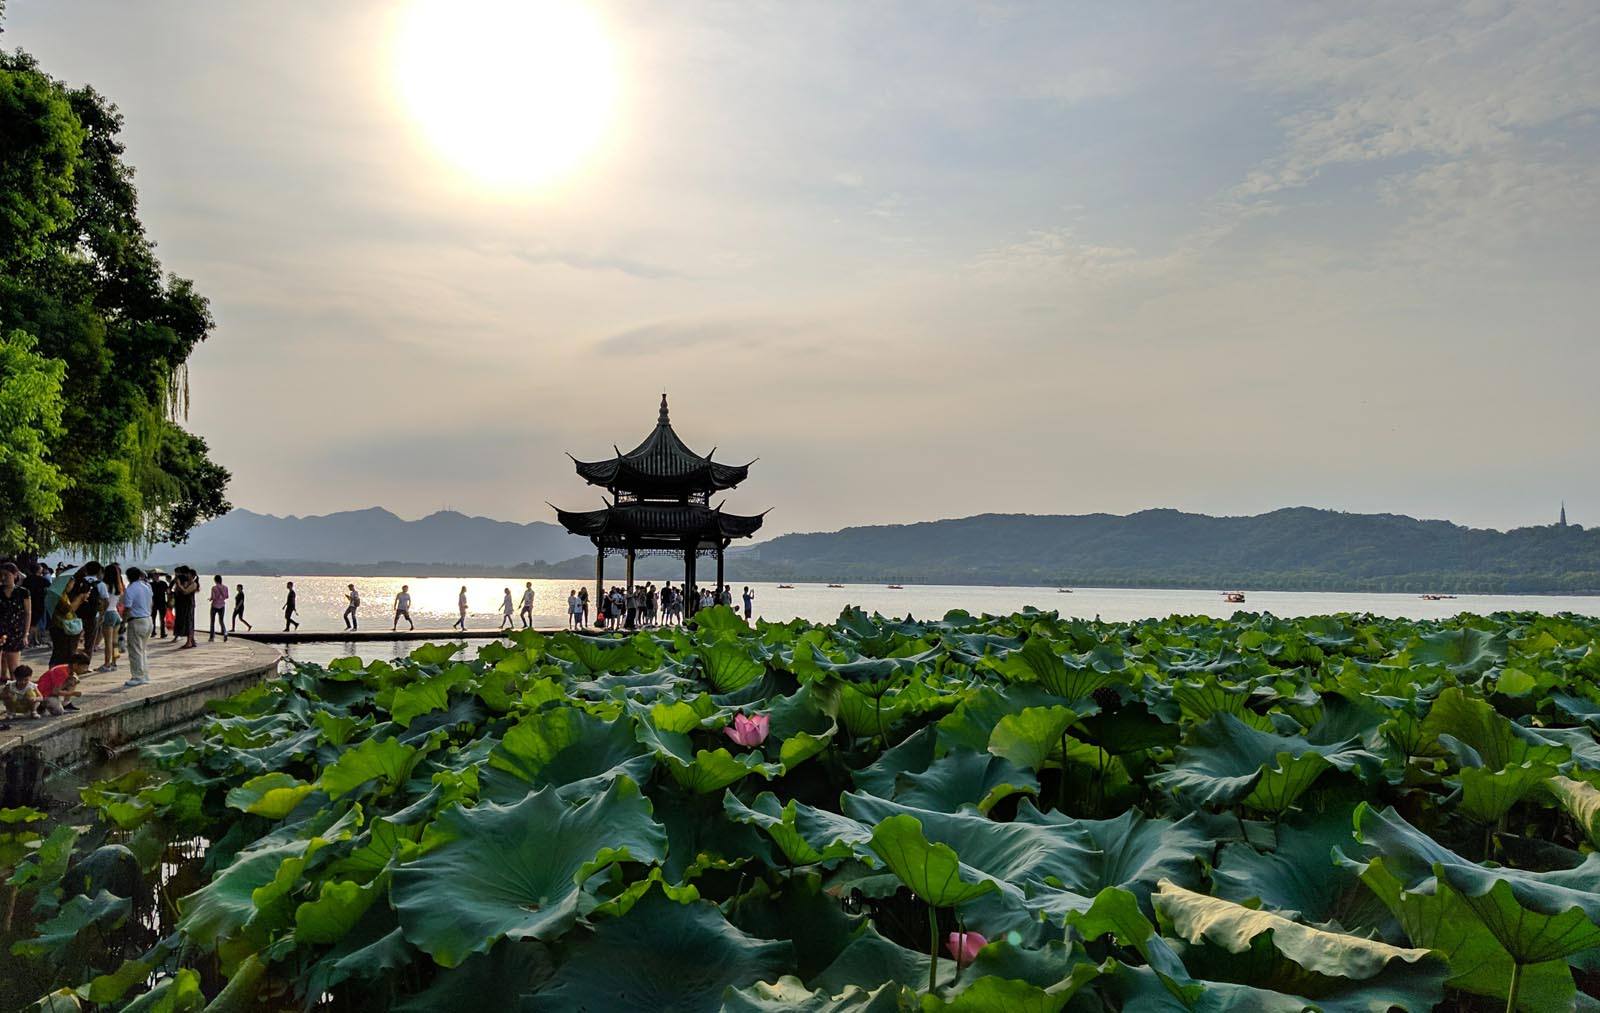 Hangzhou sunset lakeside view